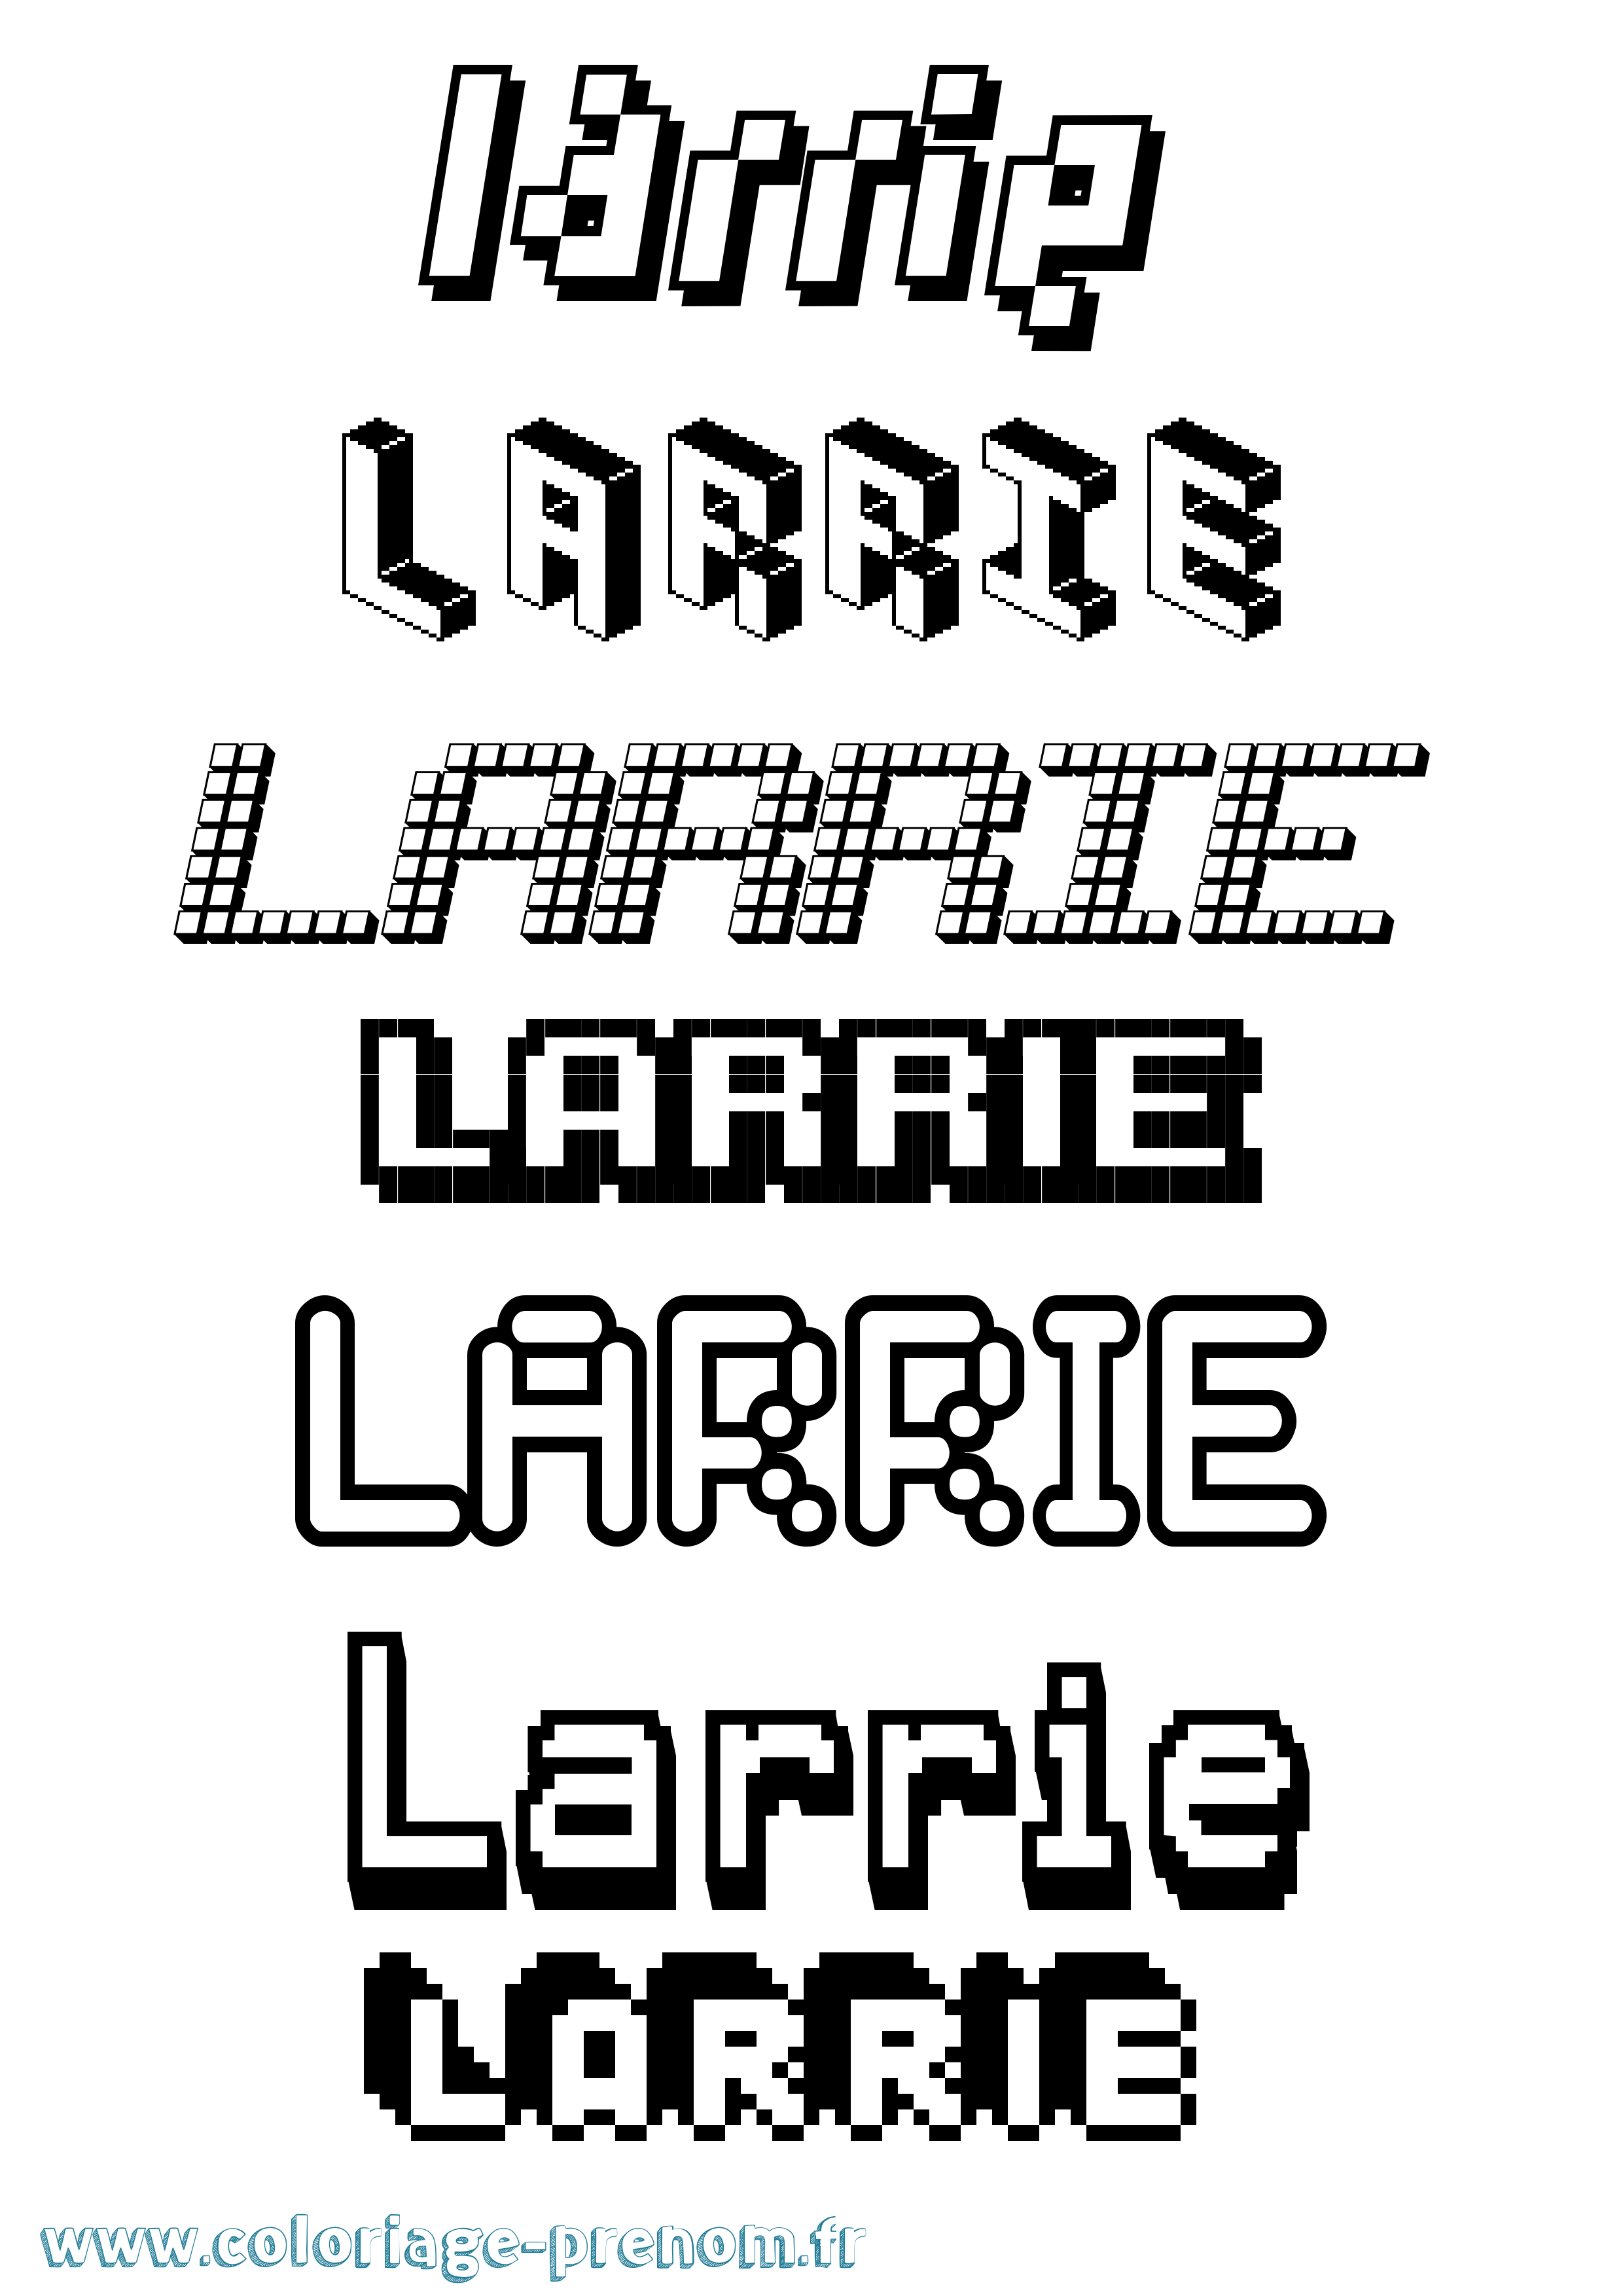 Coloriage prénom Larrie Pixel